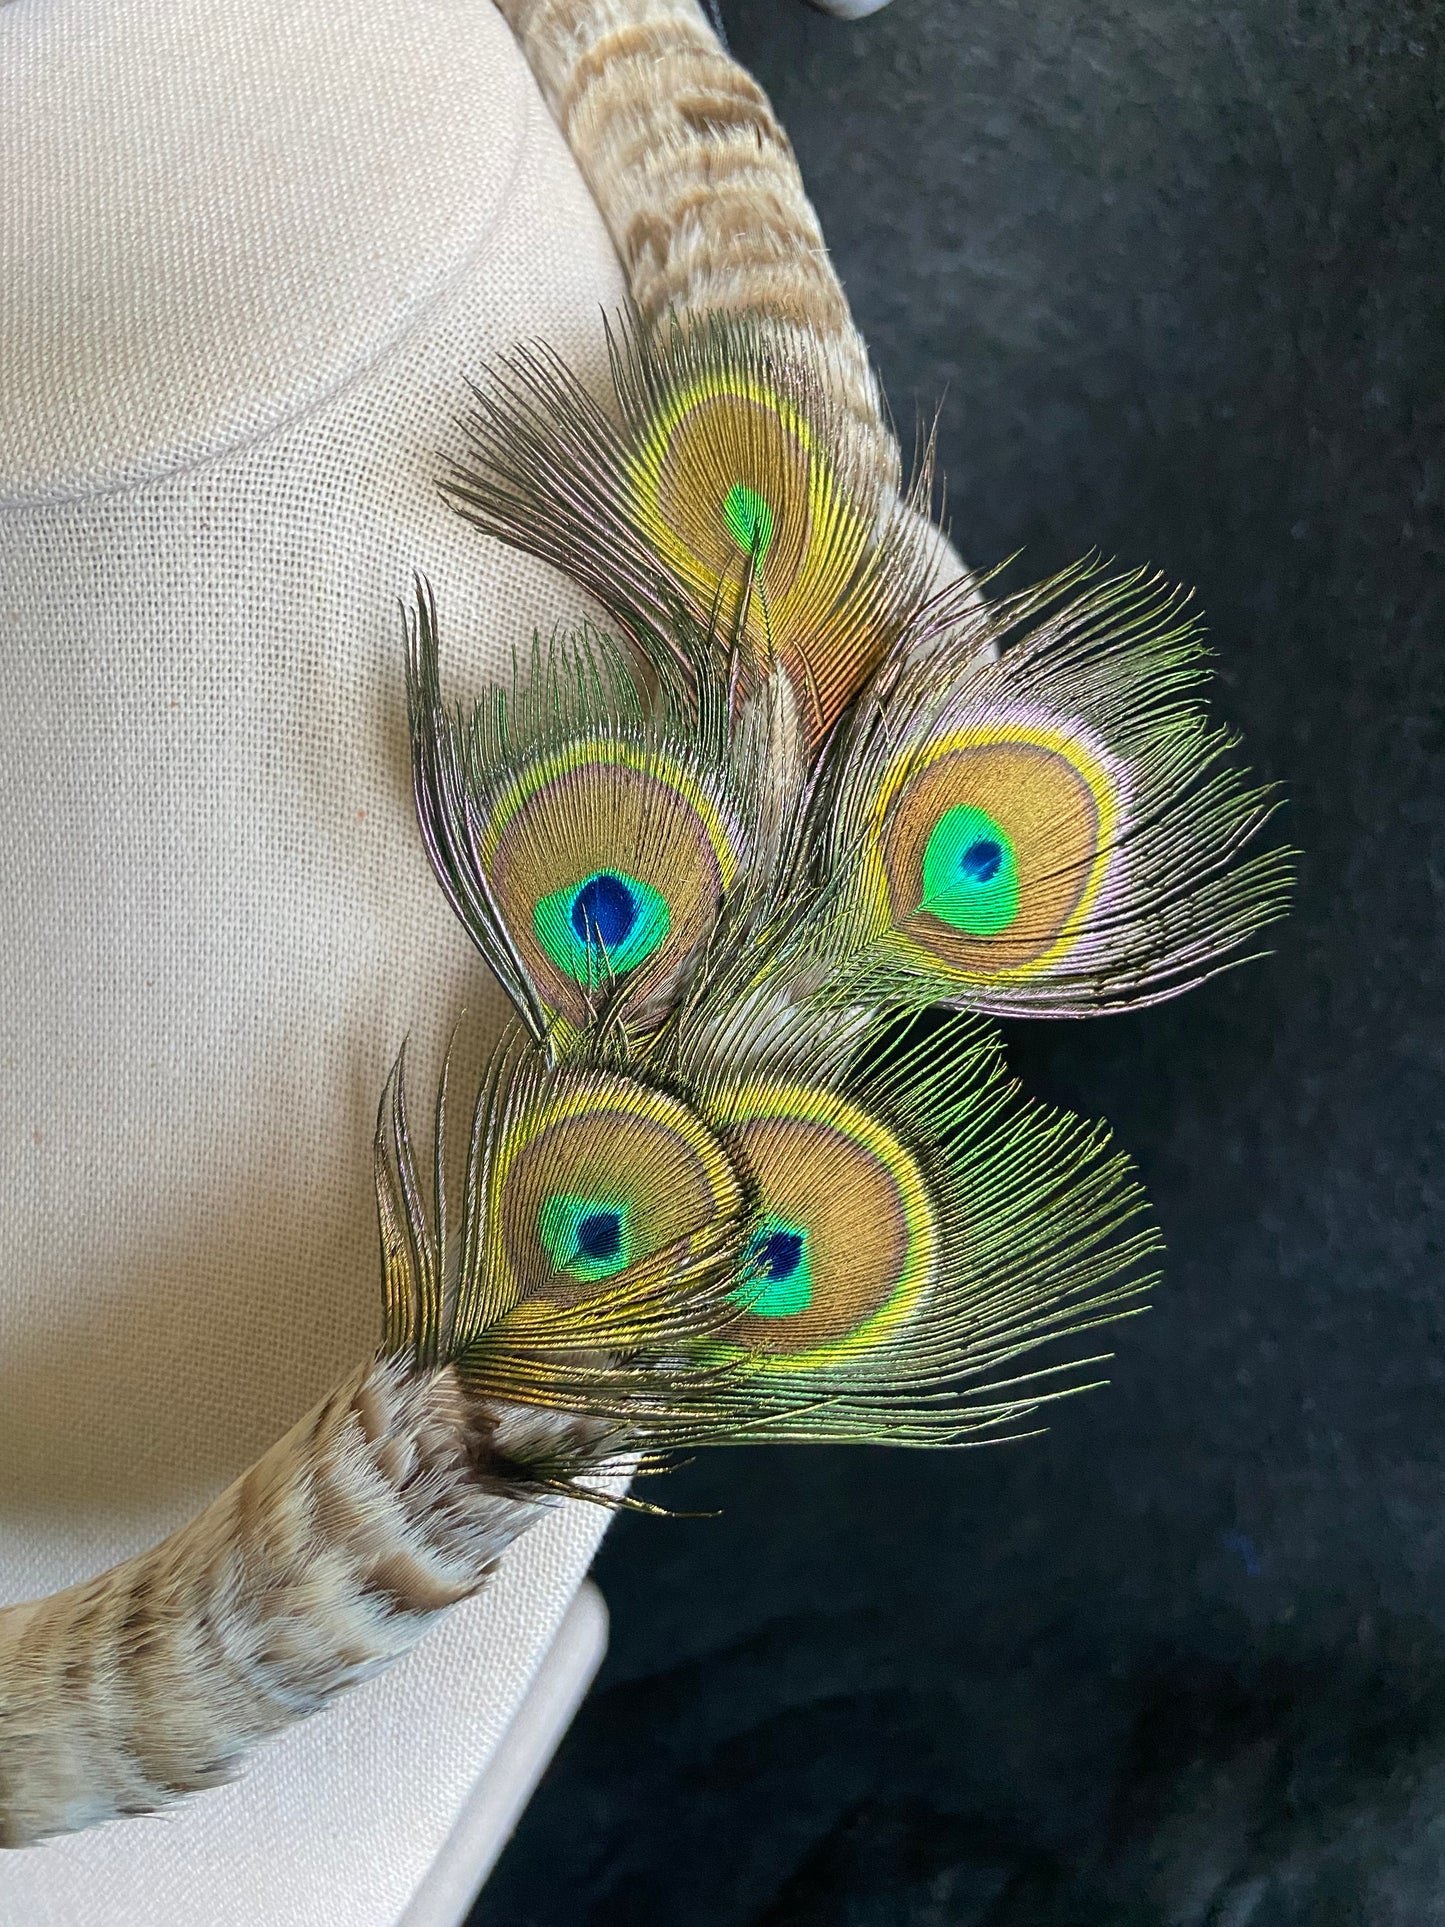 Canadian Goose and Peacock eye lei hulu (feather lei) kamoe